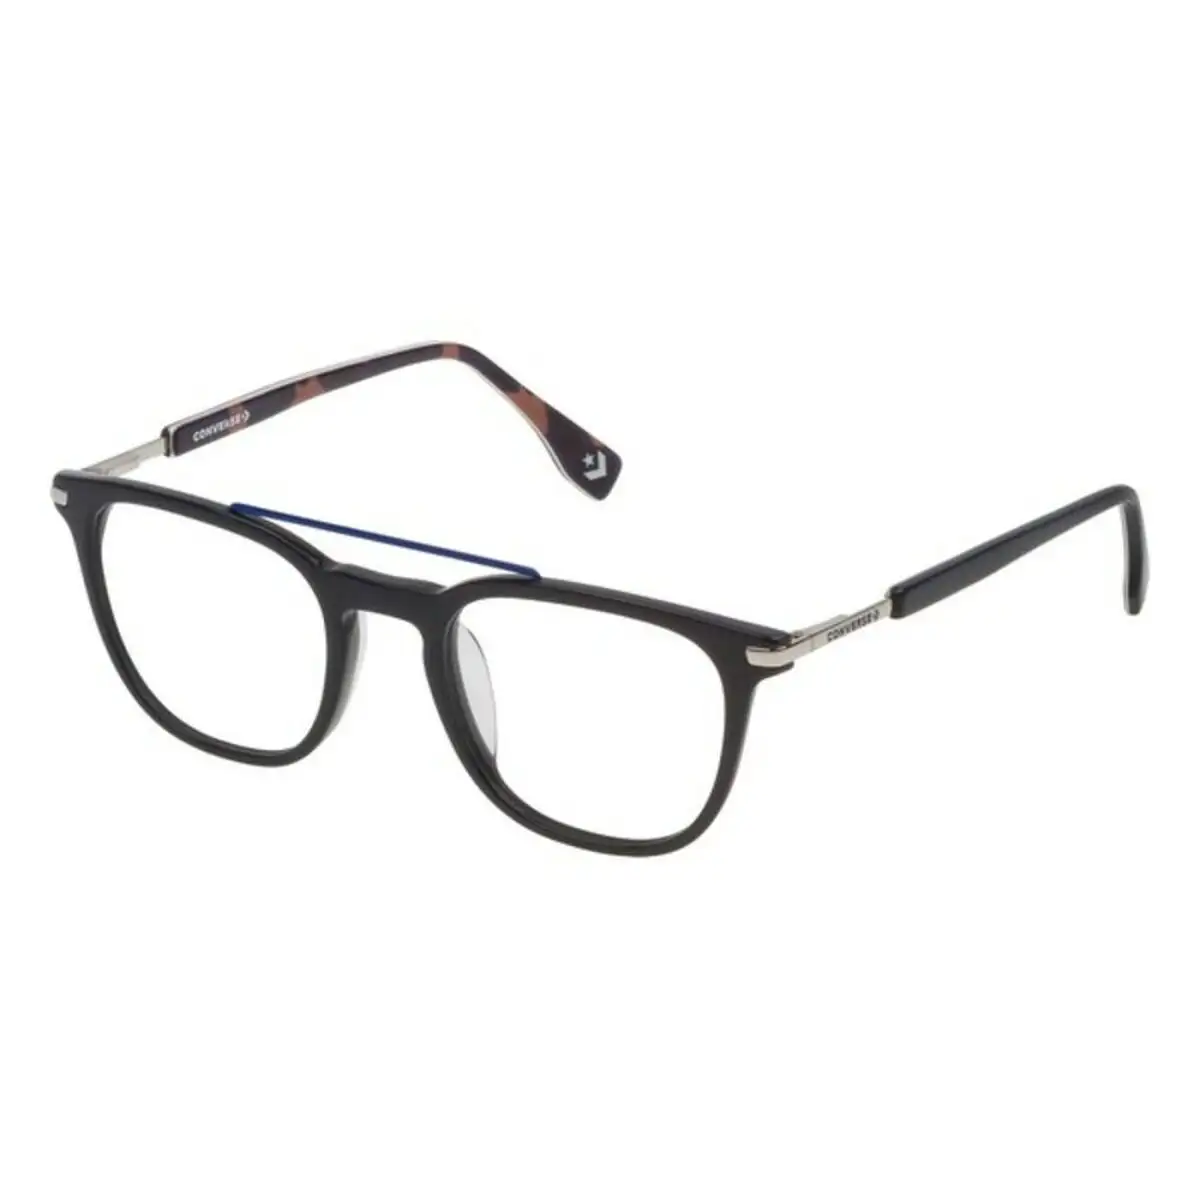 Monture de lunettes homme converse vco070q4909gu bleu o 49 mm _9781. DIAYTAR SENEGAL - L'Art de Vivre en Couleurs. Découvrez notre boutique en ligne et trouvez des produits qui ajoutent une palette vibrante à votre quotidien.